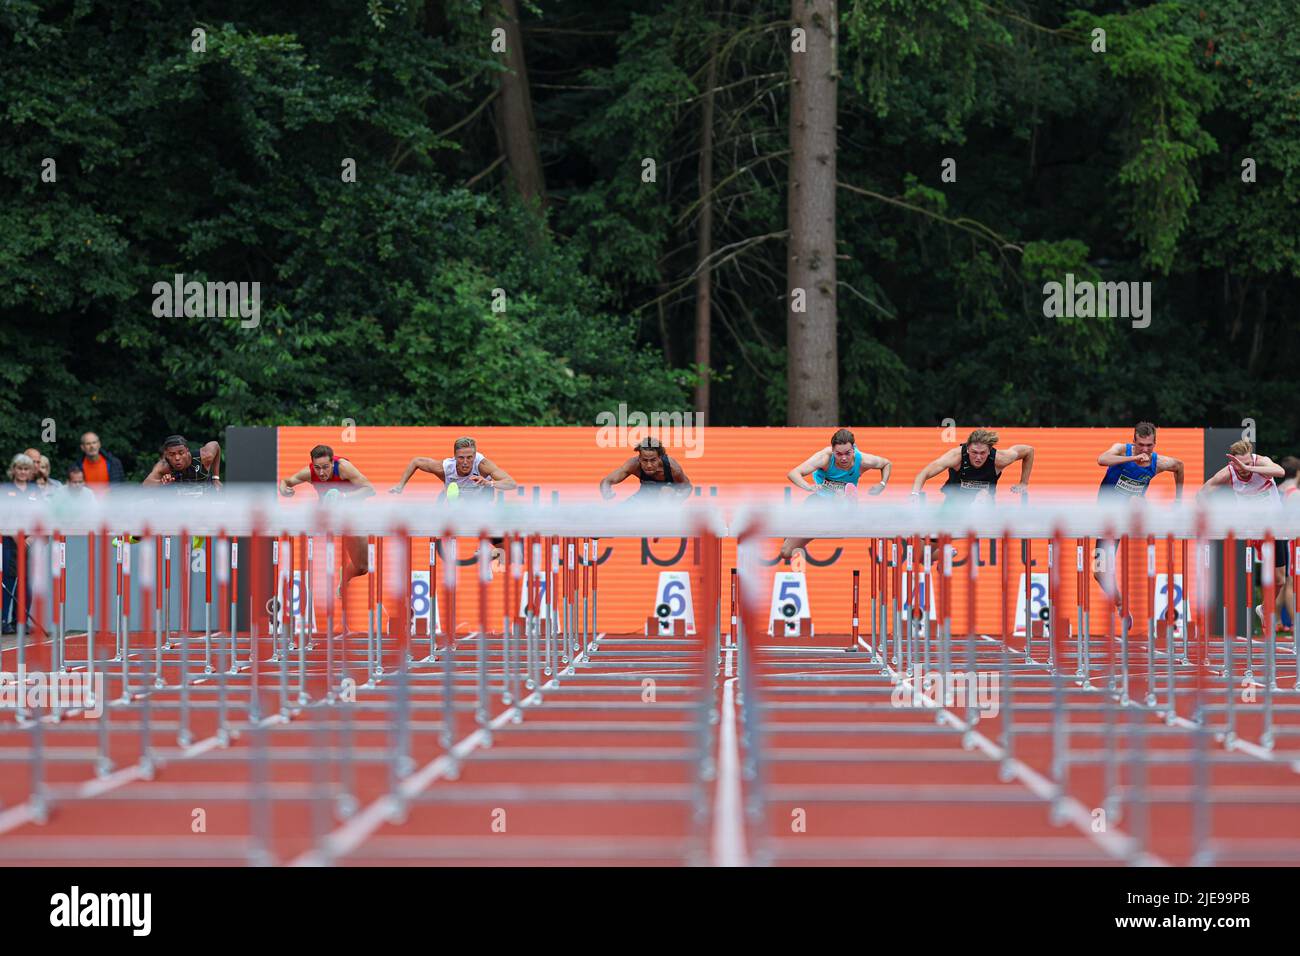 APELDOORN, PAESI BASSI - GIUGNO 26: Atleti dei Paesi Bassi che gareggiano nella finale Men's 110m hurdles dell'ASICS NK Atletiek 2022 - Day 3 all'AV '34 il 26 Giugno 2022 ad Apeldoorn, Paesi Bassi. (Foto di Peter Lous/Orange Pictures) Foto Stock